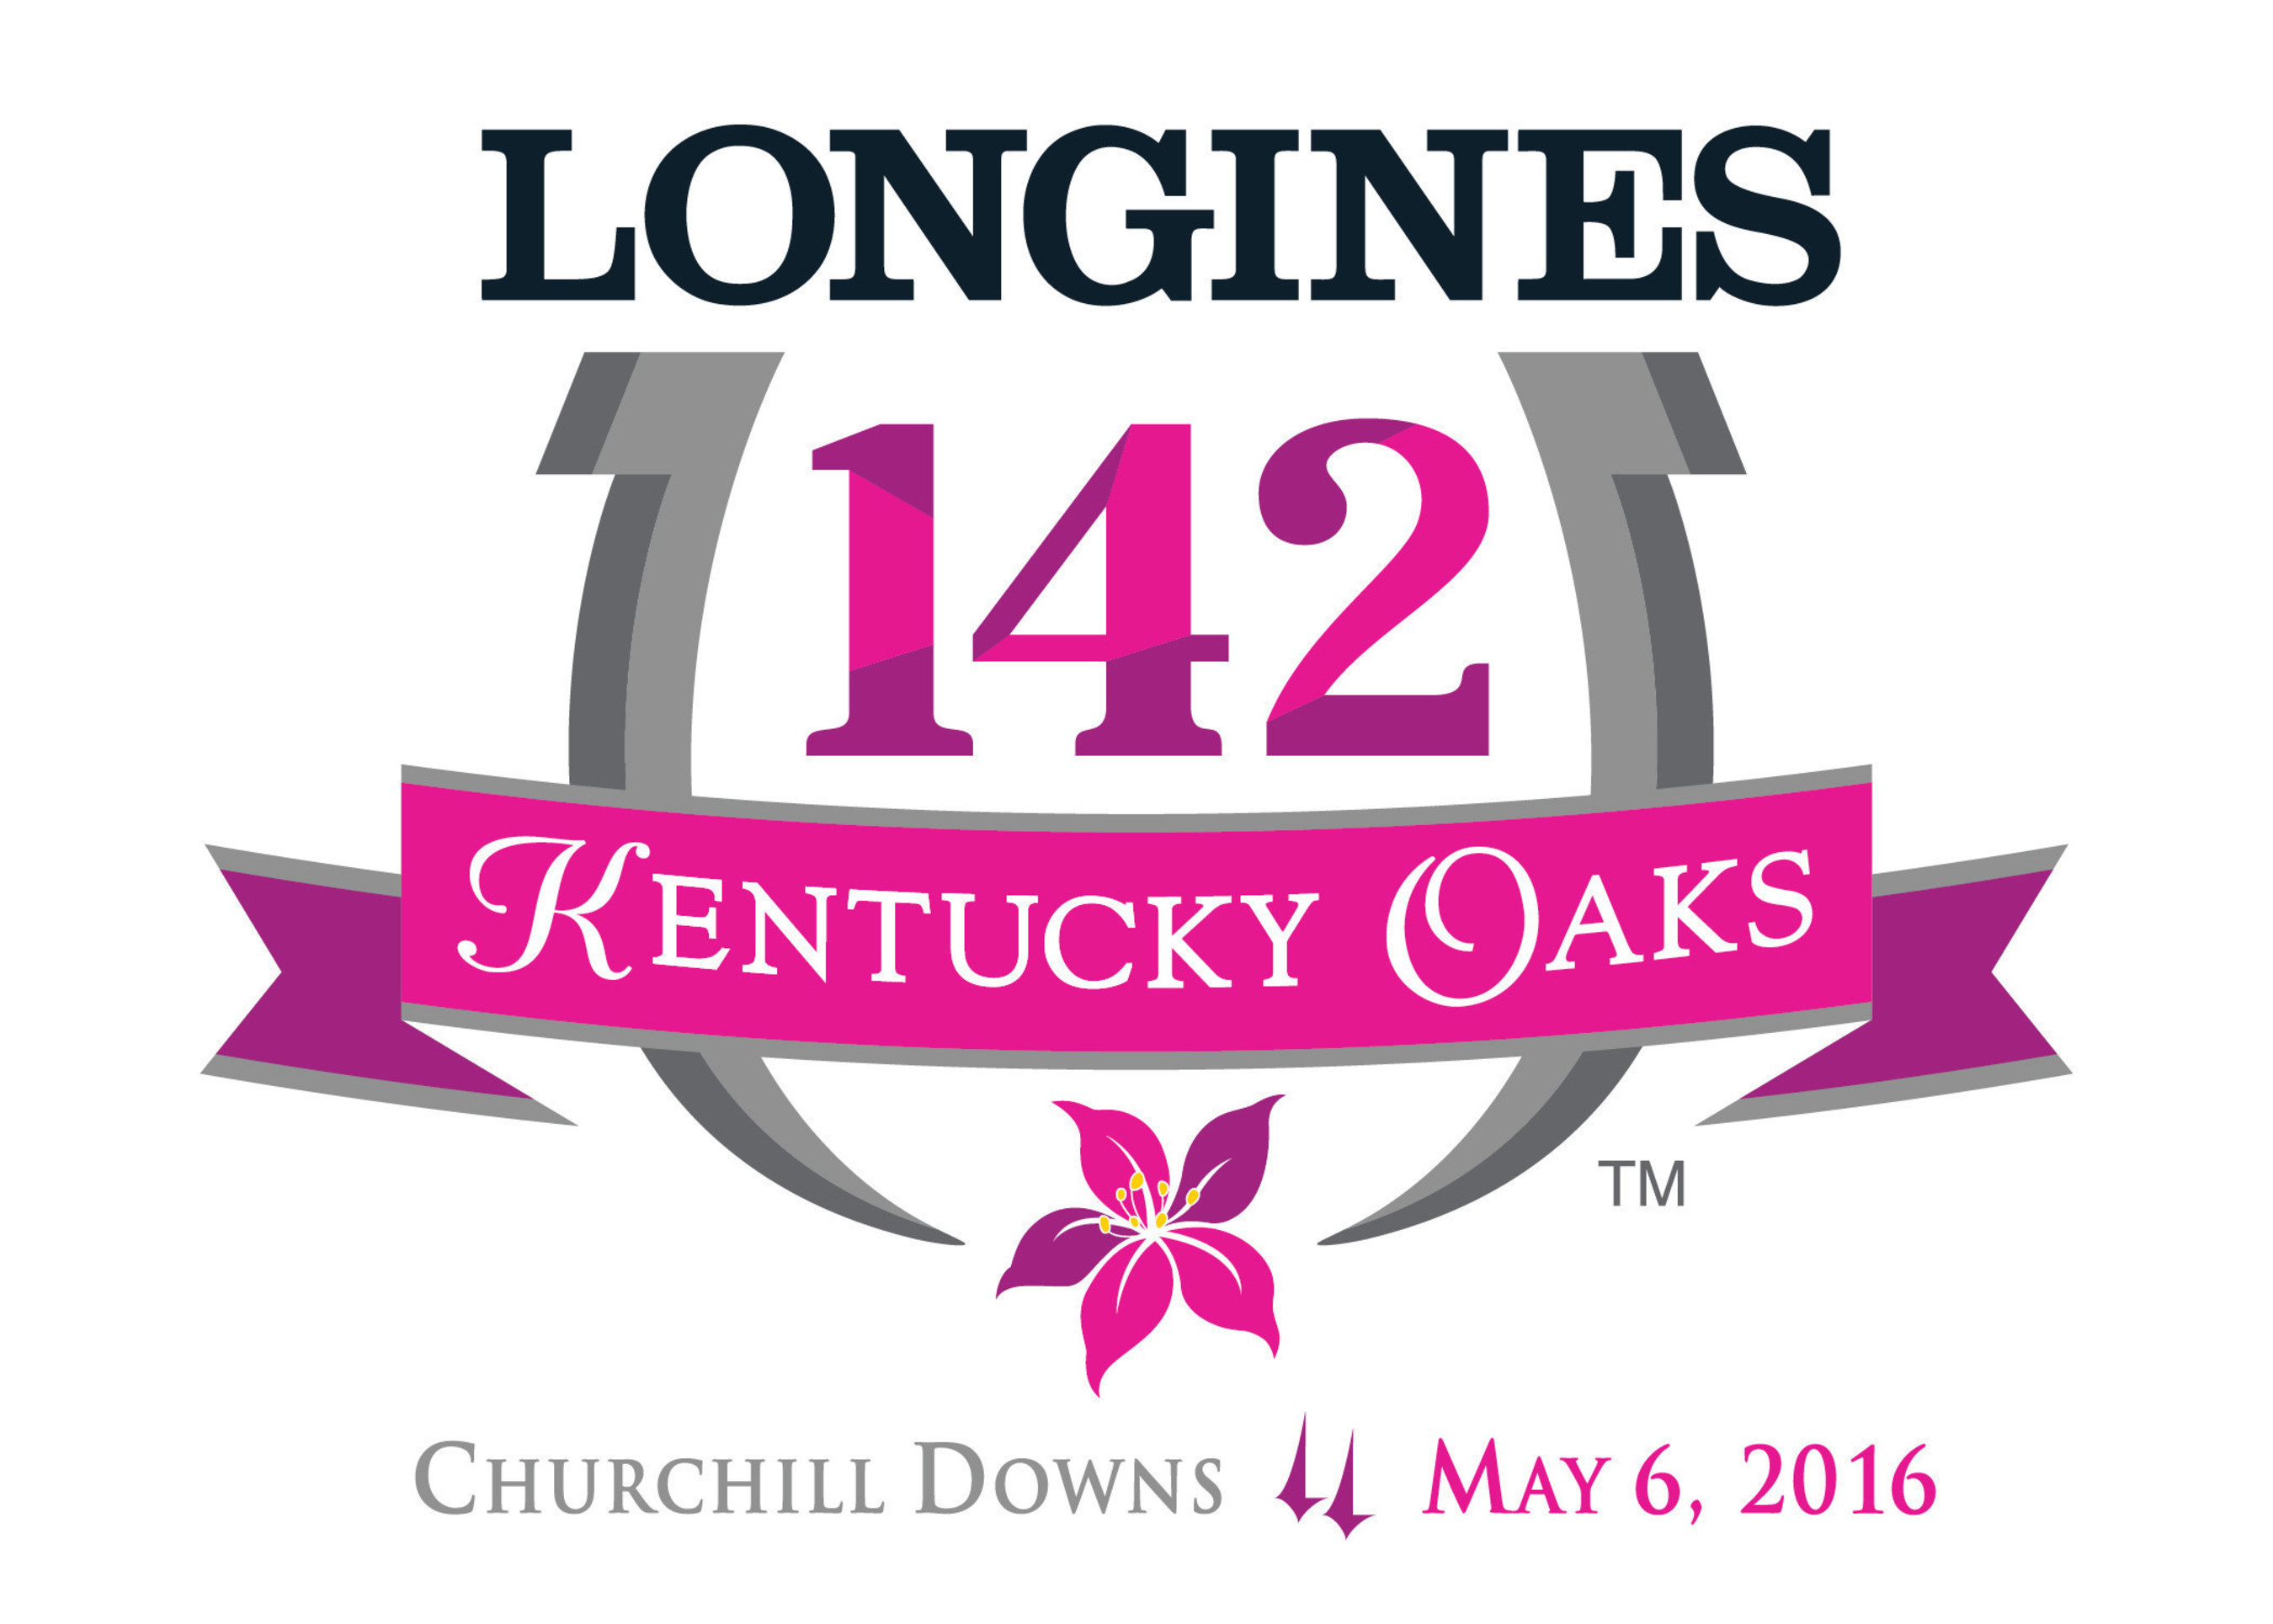 Longines Kentucky Oaks